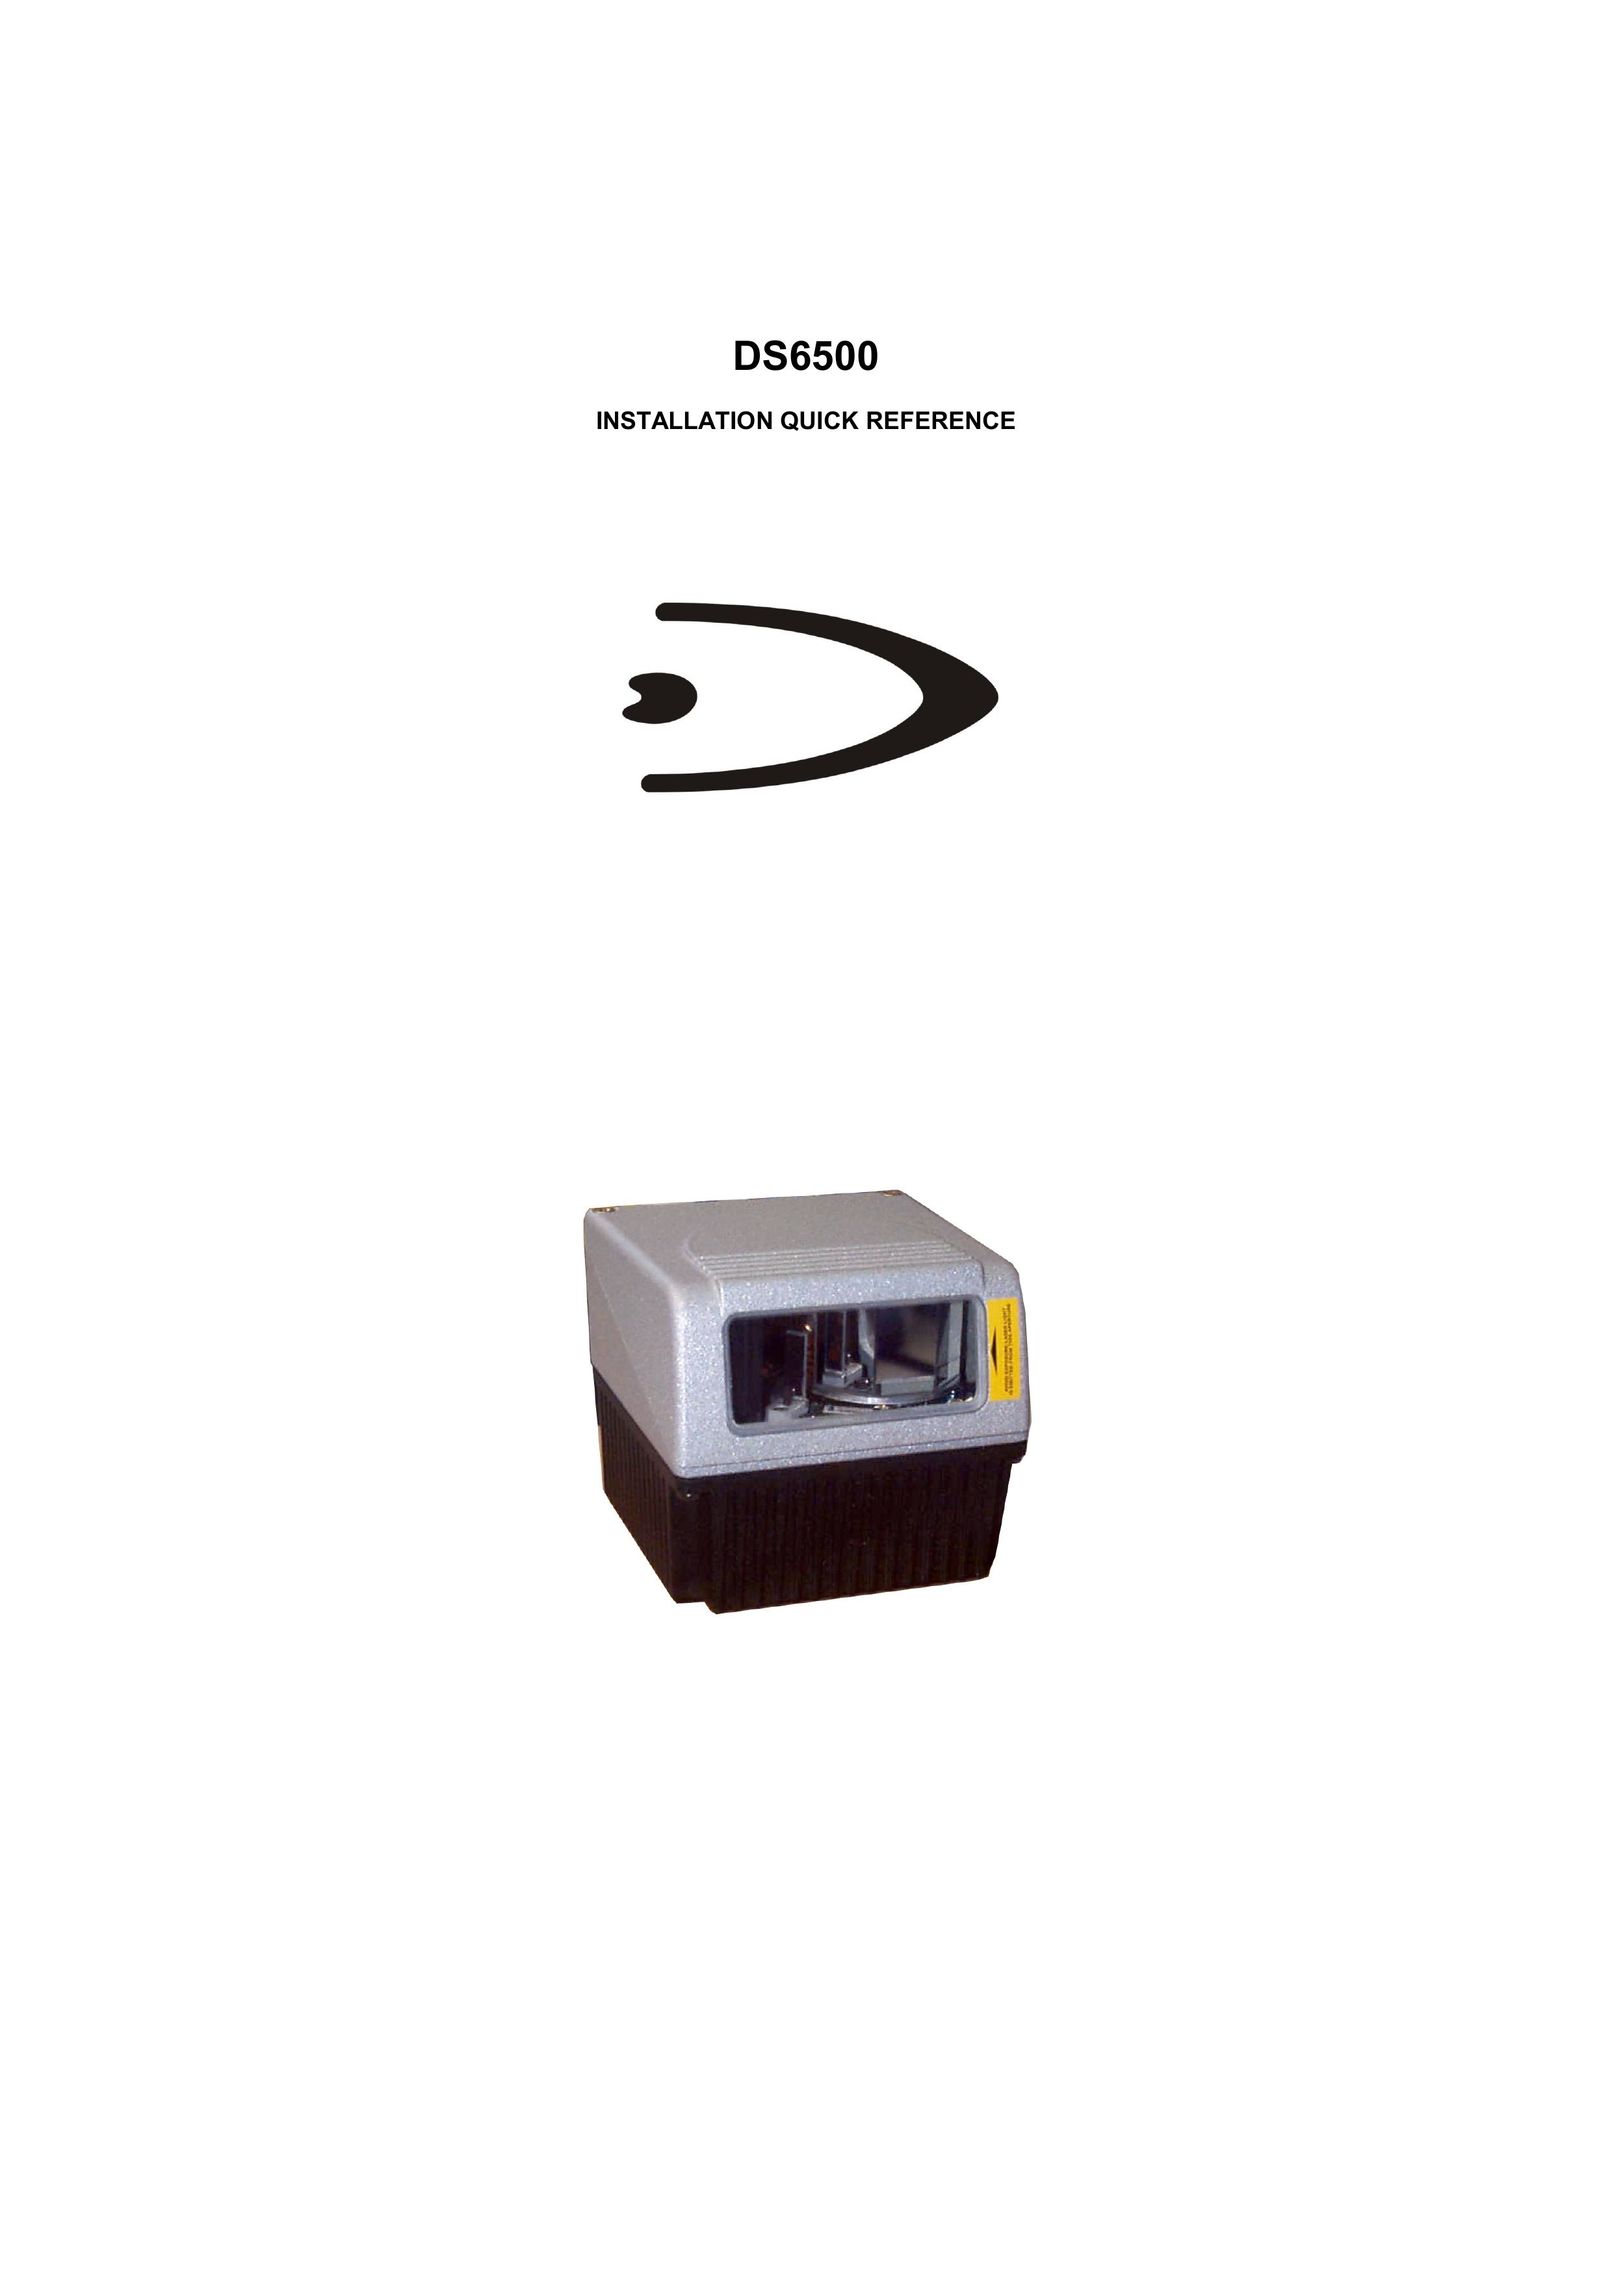 Datalogic Scanning DS6500-100-015 Scanner User Manual